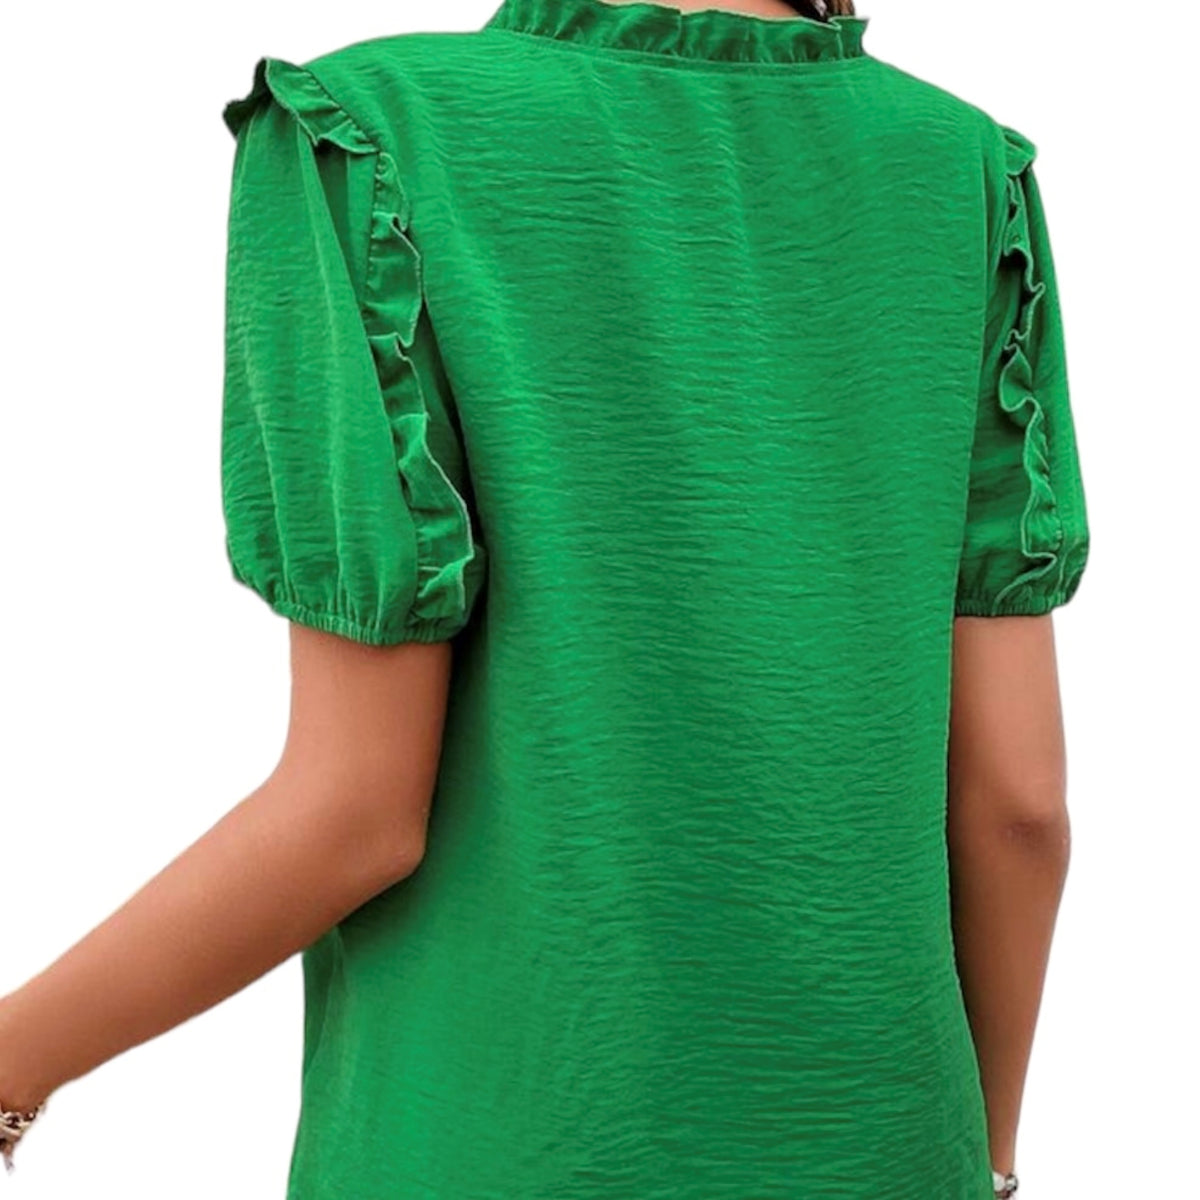 Sa silhouette à manches courtes ballon et son col V. de couleur vert vif vous offrent une allure unique, audacieuse et confiante. Créez votre look et montrez-le au monde!